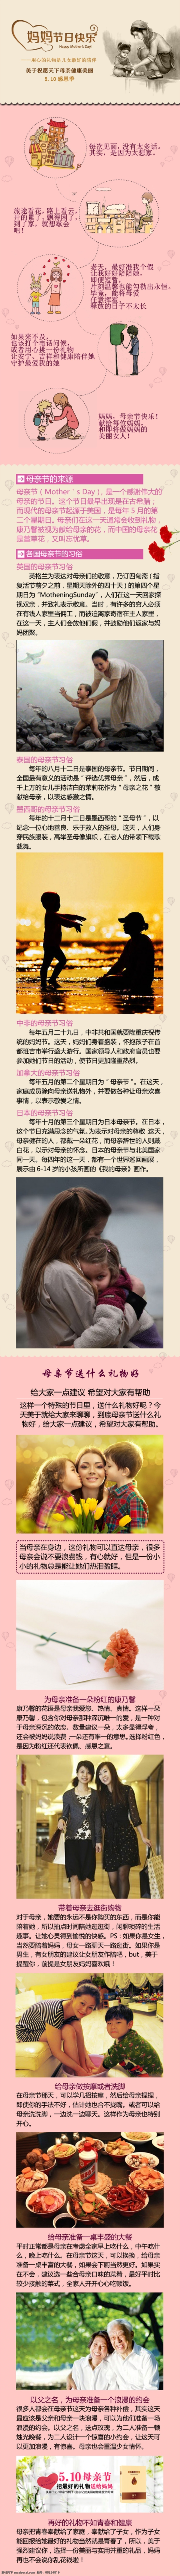 母亲节 来源 习俗 妈妈 母亲节宣传 母亲节来源 节日宣传图片 原创设计 原创网页设计